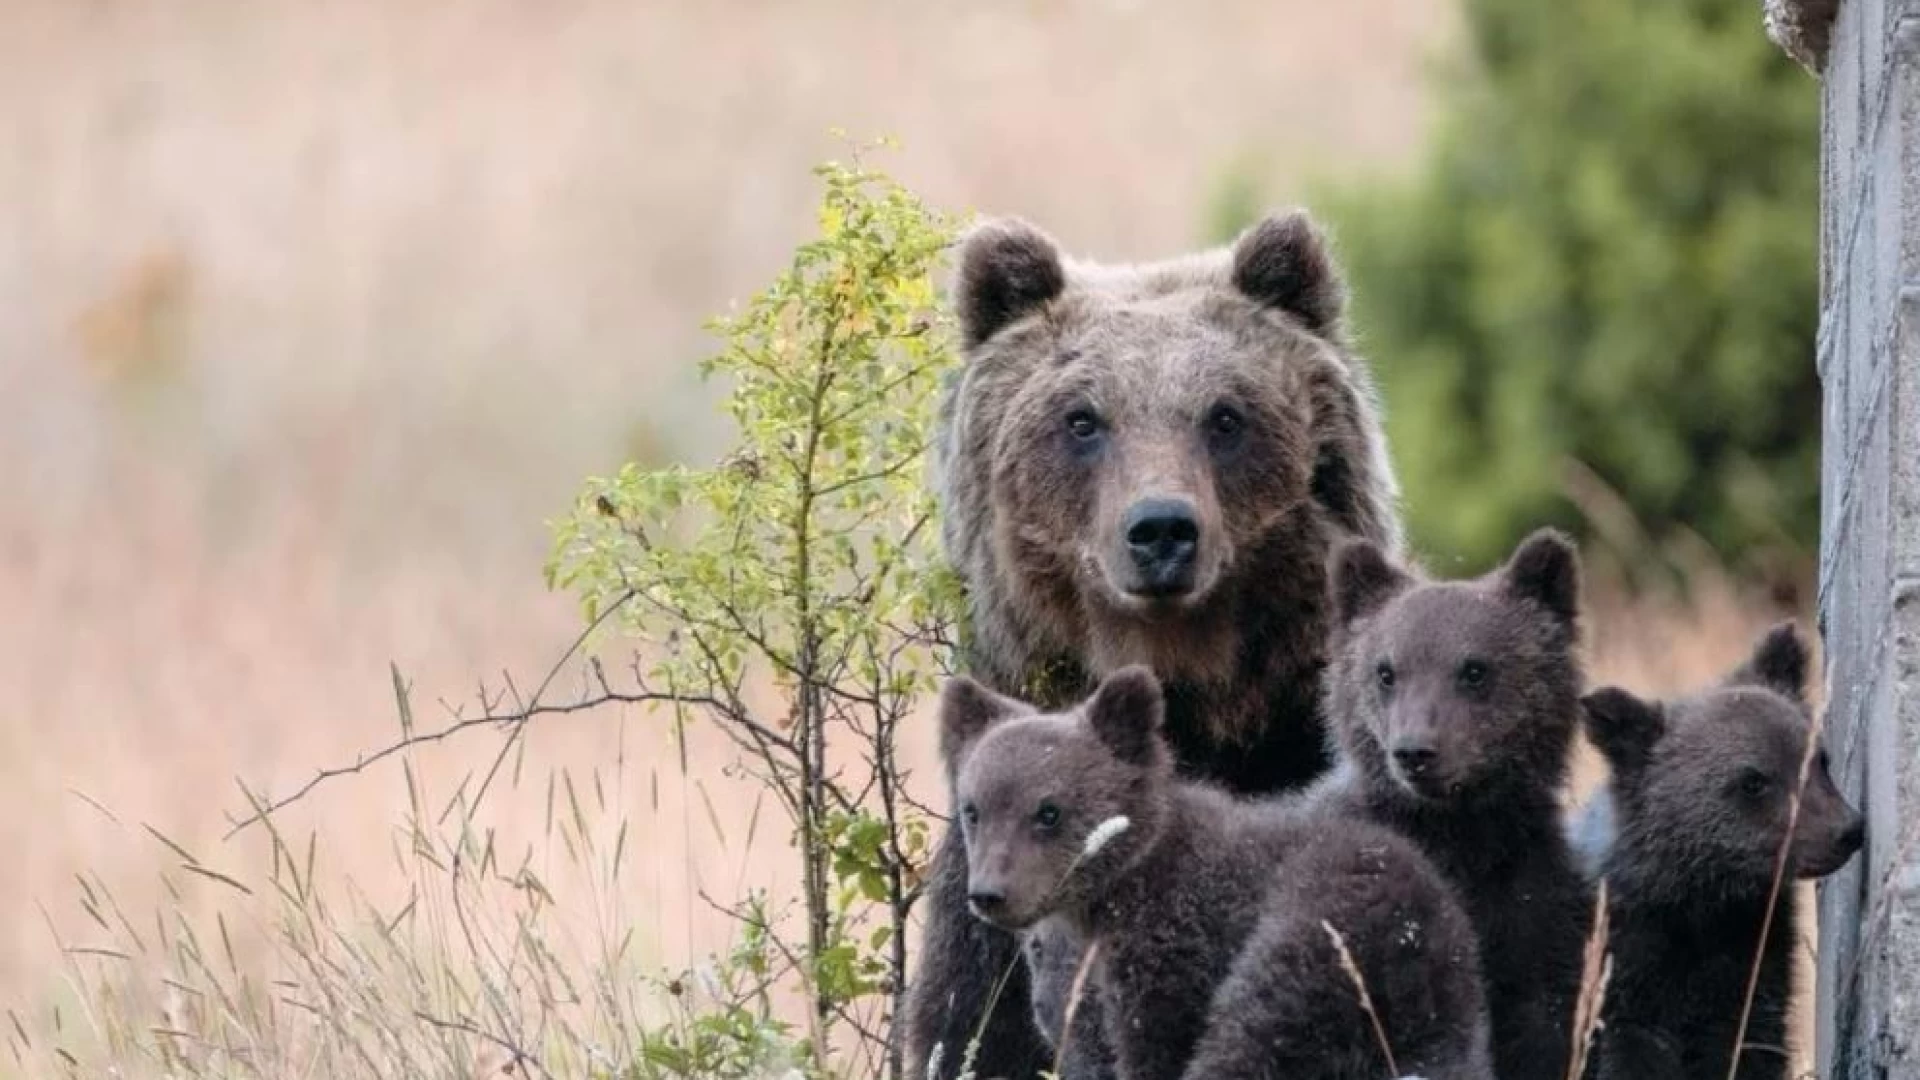 Uccisa a fucilate l’orsa AMARENA irrintracciabili al momento i 2 piccoli che l’accompagnavano. La nota dell'Associazione Salviamo L'Orso